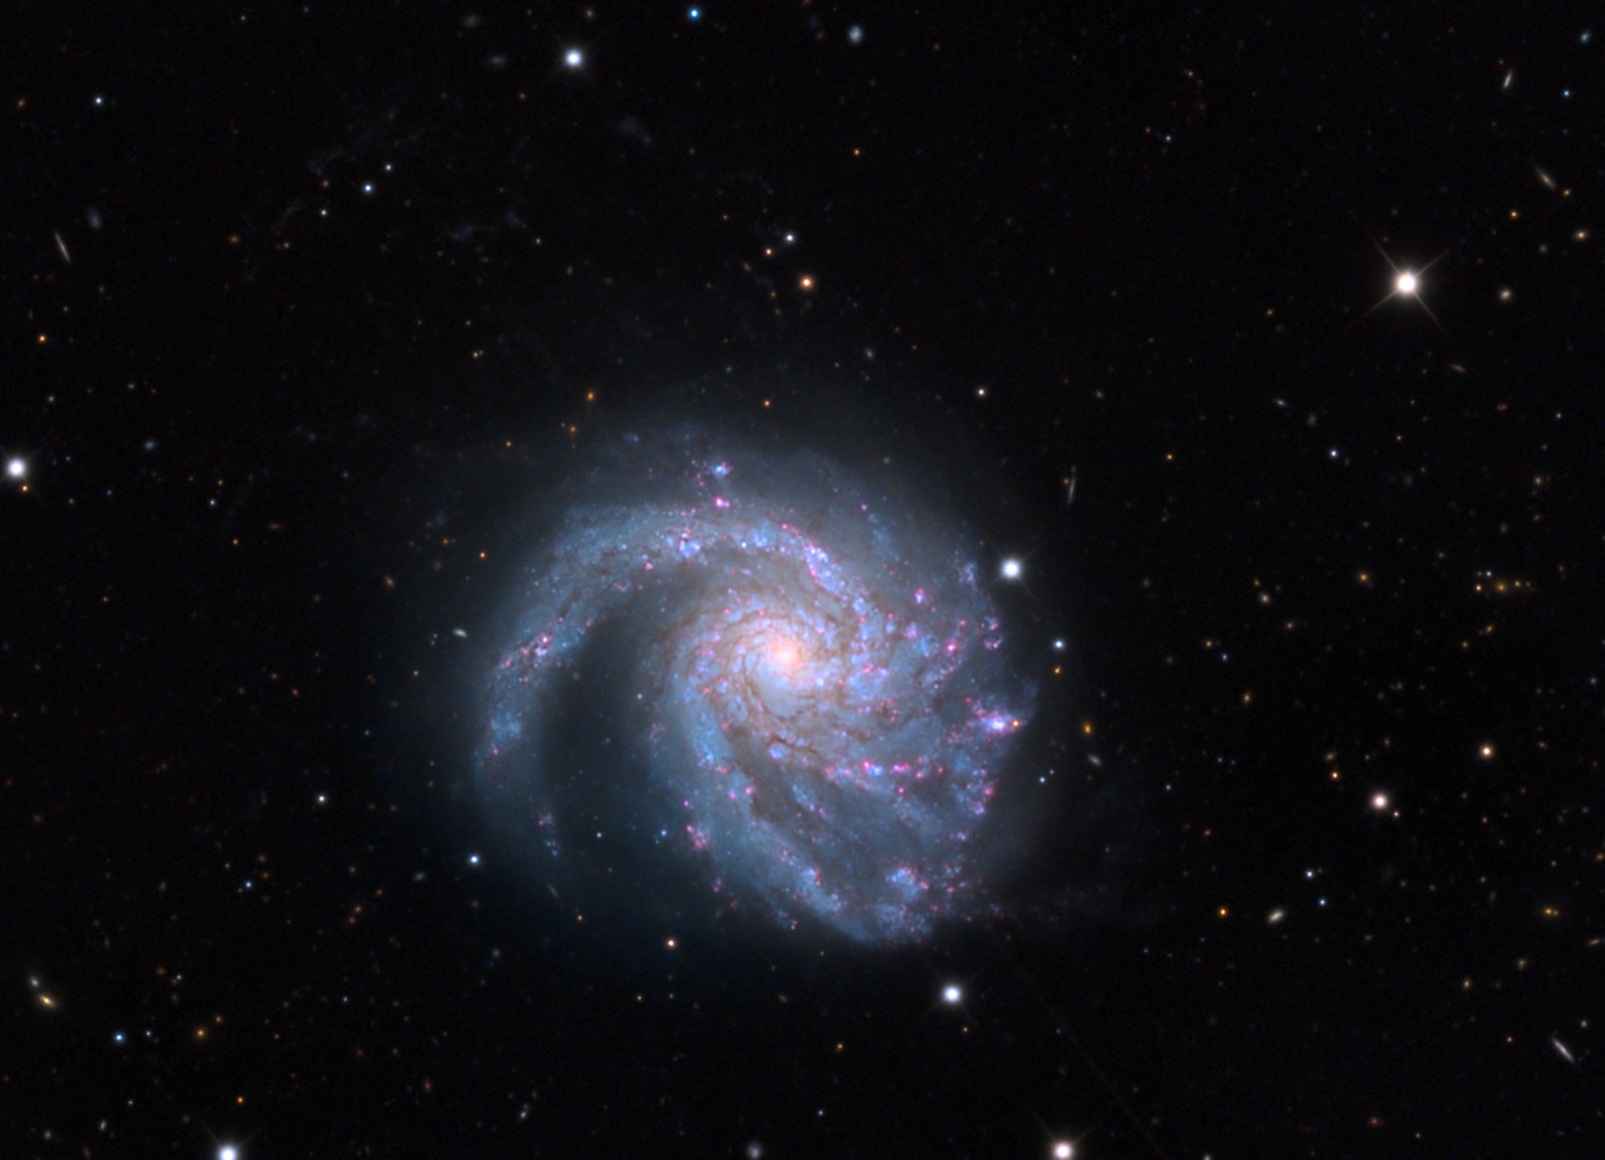 Une galaxie de l'Amas de la Vierge, Messier 99. © Adam Block, Mount Lemmon SkyCenter, University of Arizona